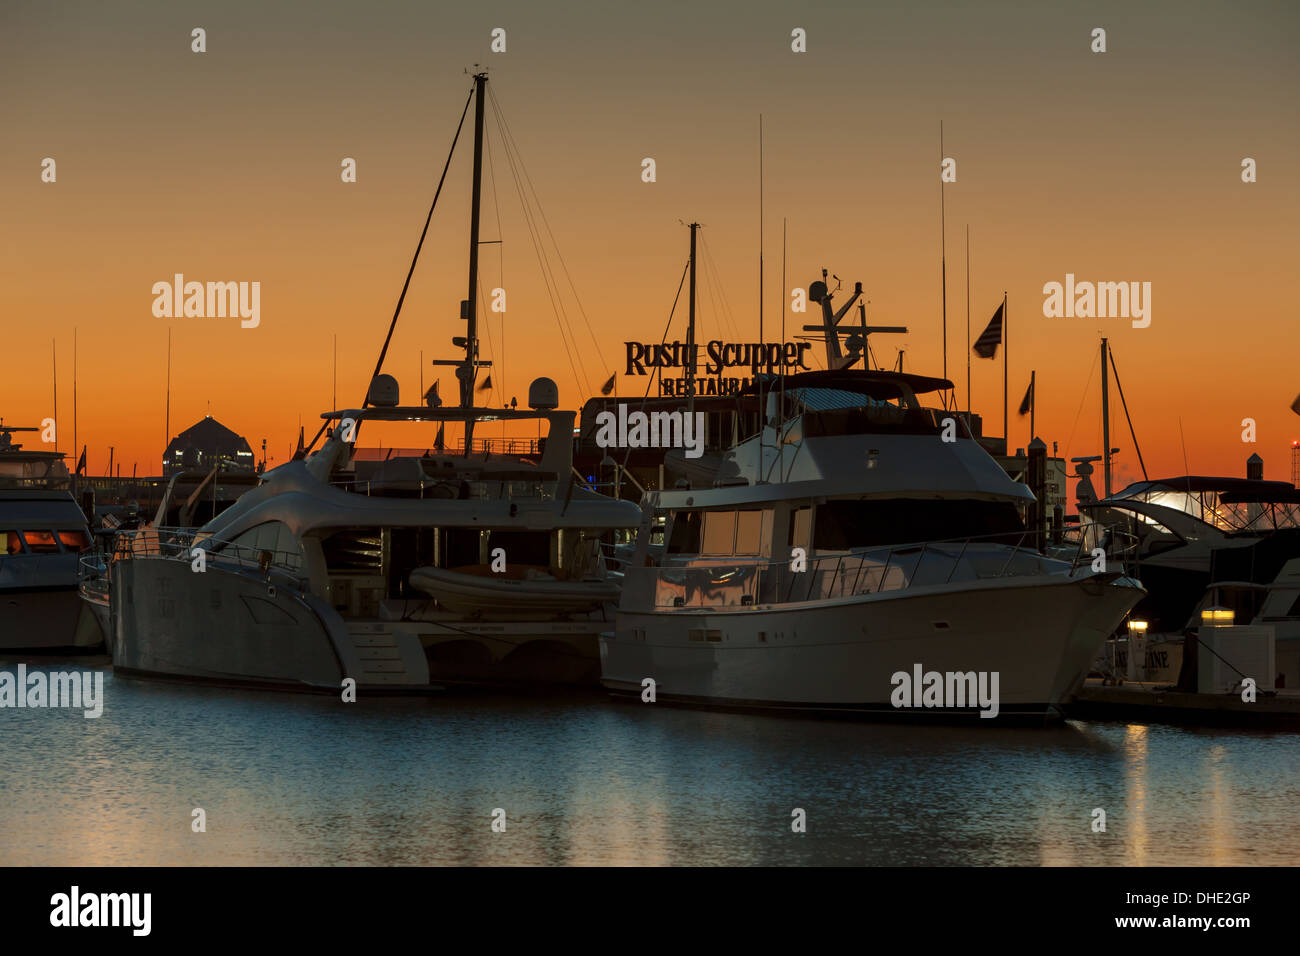 Vor Sonnenaufgang Himmel leuchtet Orange hinter Sportboote in einem der Häfen in den inneren Hafen von Baltimore, Maryland angedockt. Stockfoto